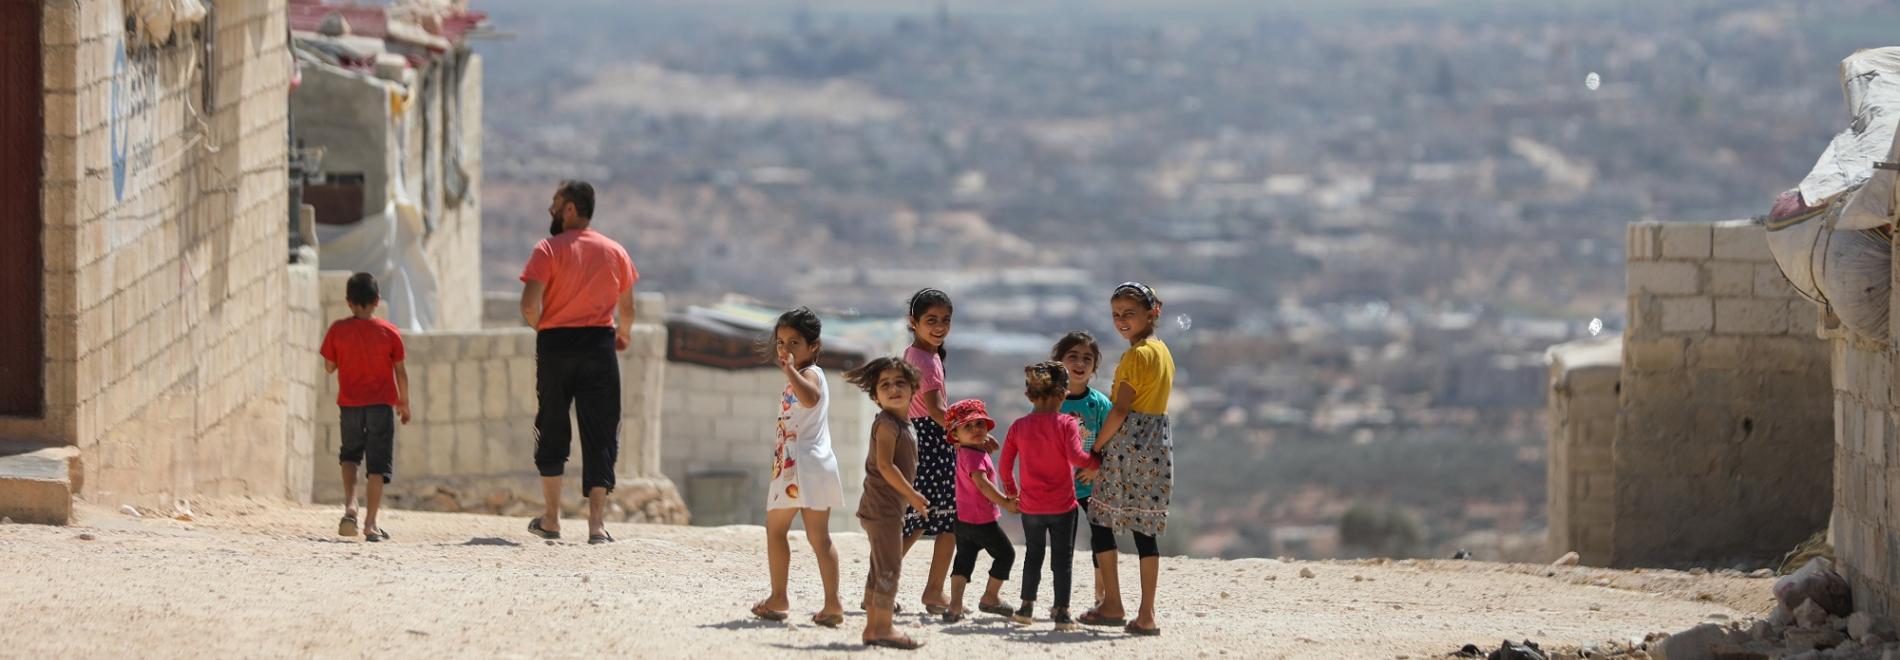 Kinder in Idlib, Syrien, nach dem Erdbeben 2023. Foto: Ärzte der Welt